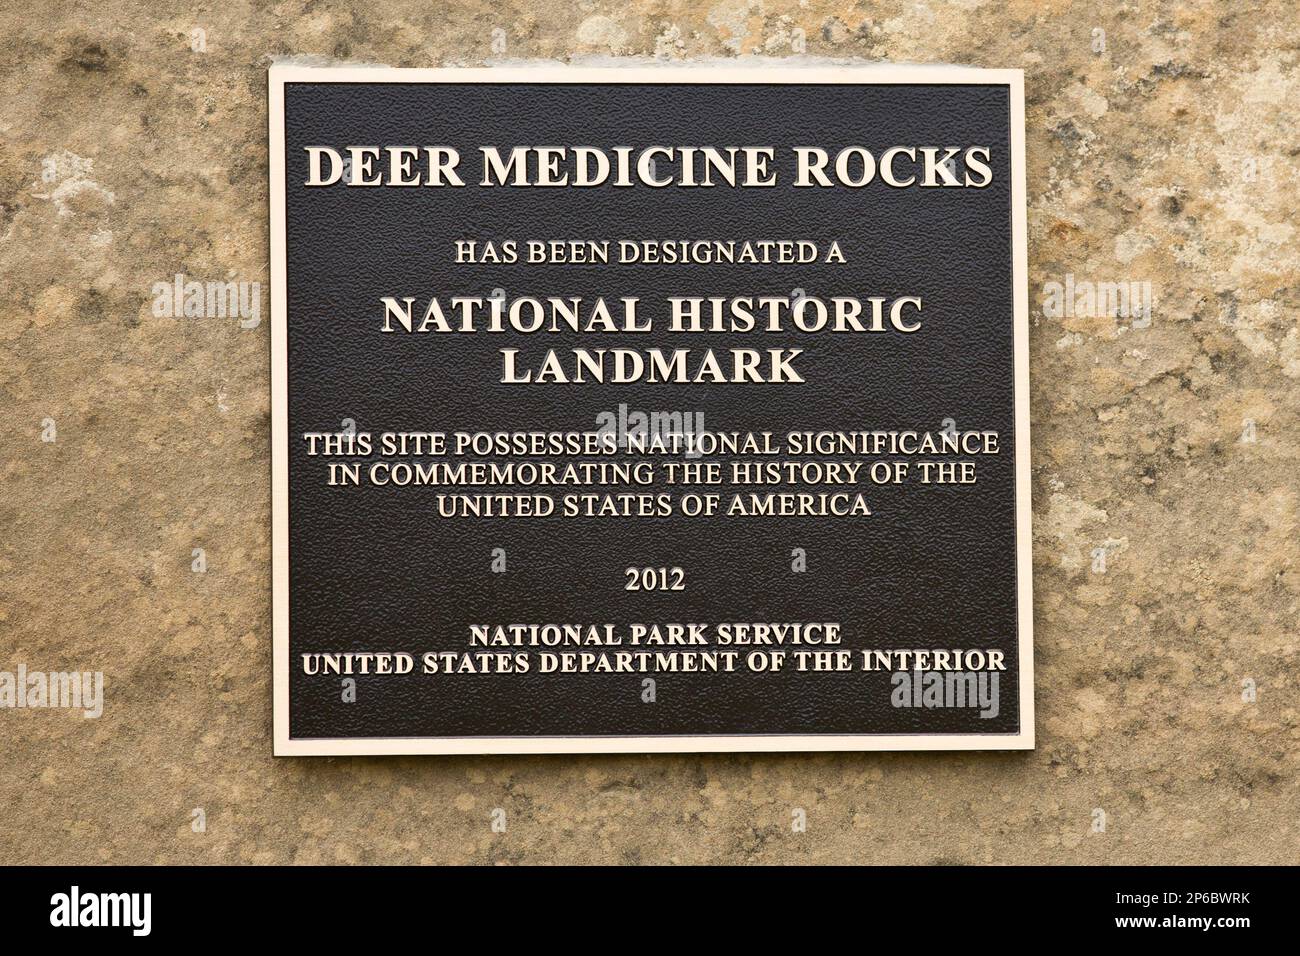 Deer Medicine